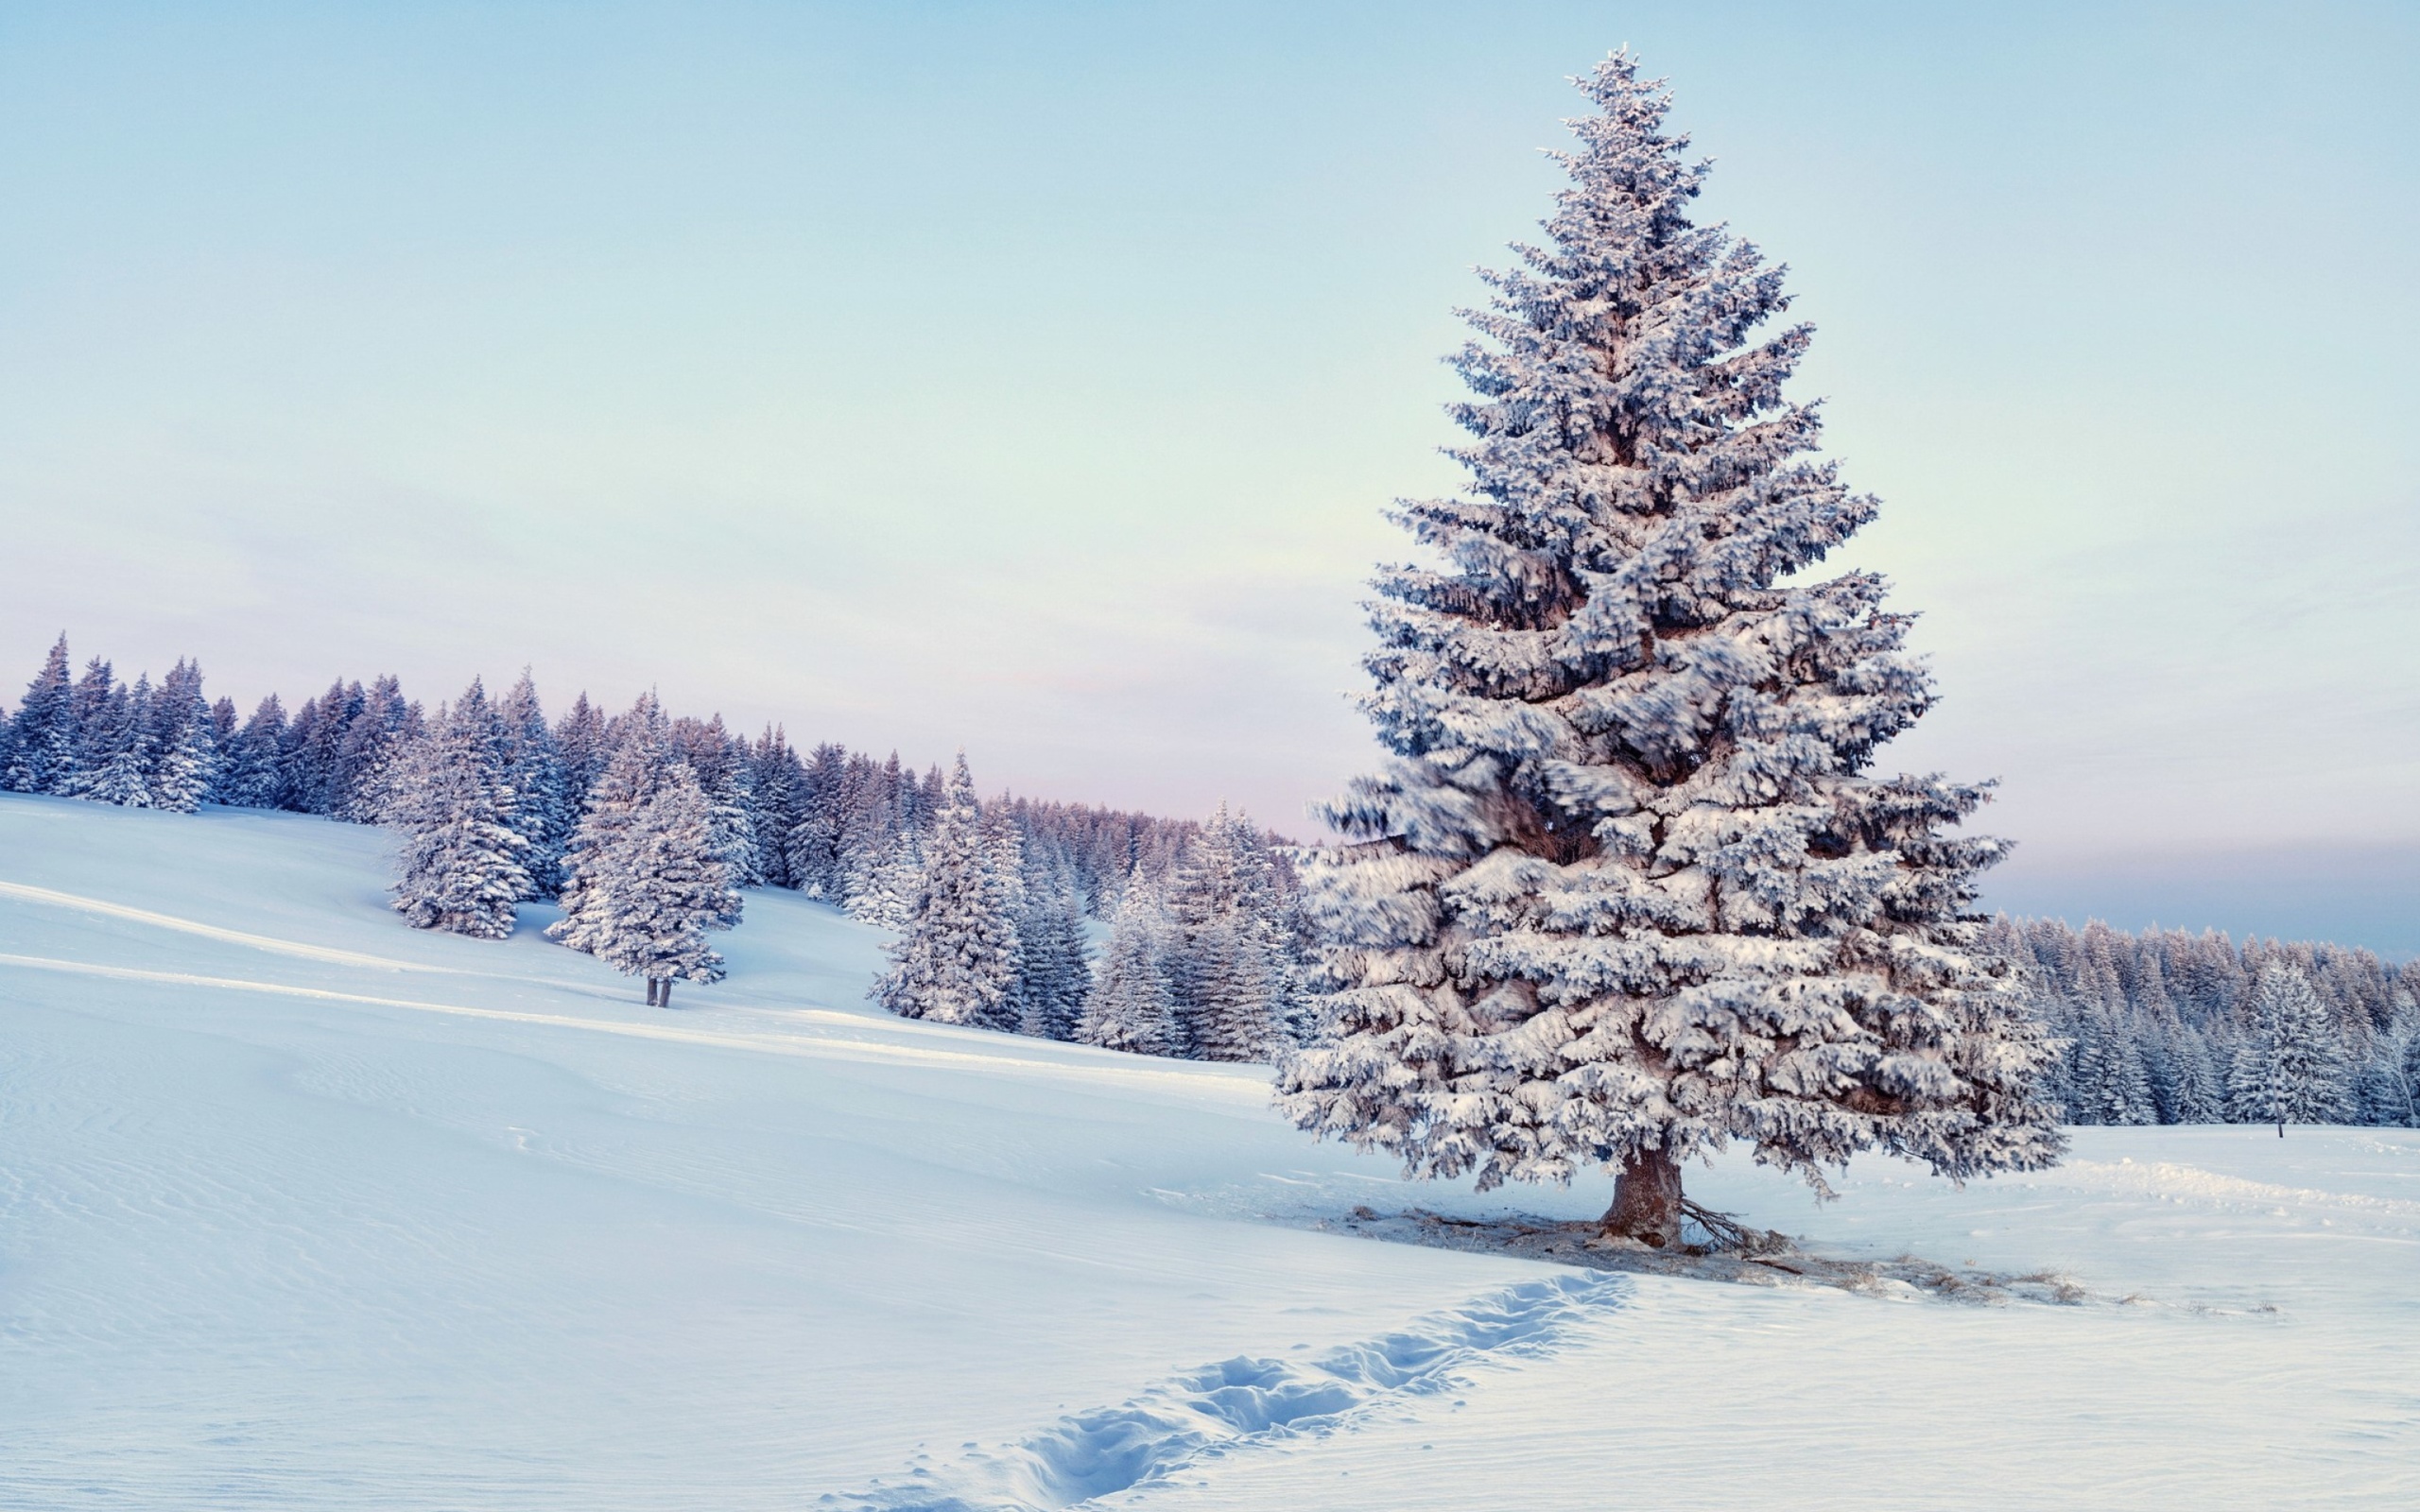 Snowy Forest Winter Scenery wallpaper 2560x1600